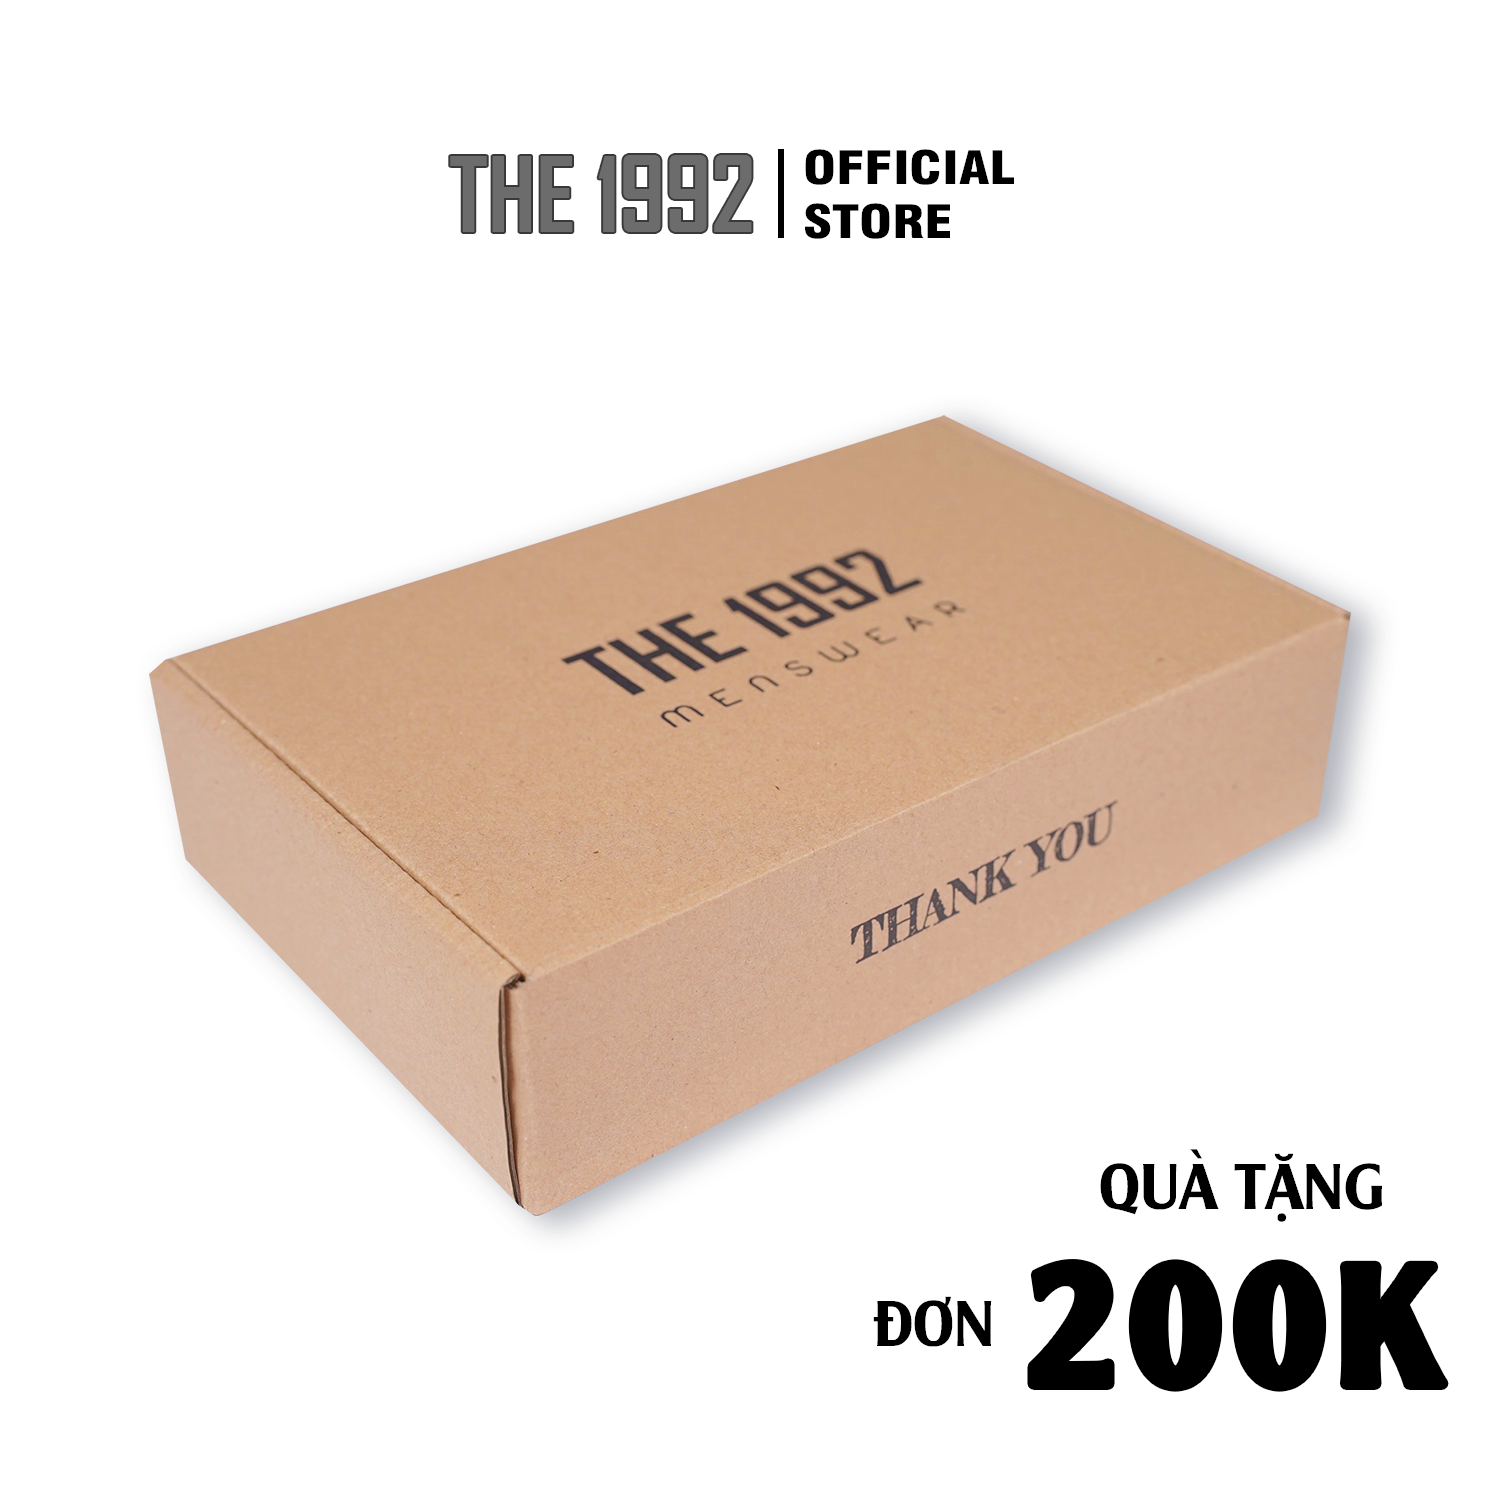 Hộp đựng sản phẩm THE 1992 Premium Gift Box